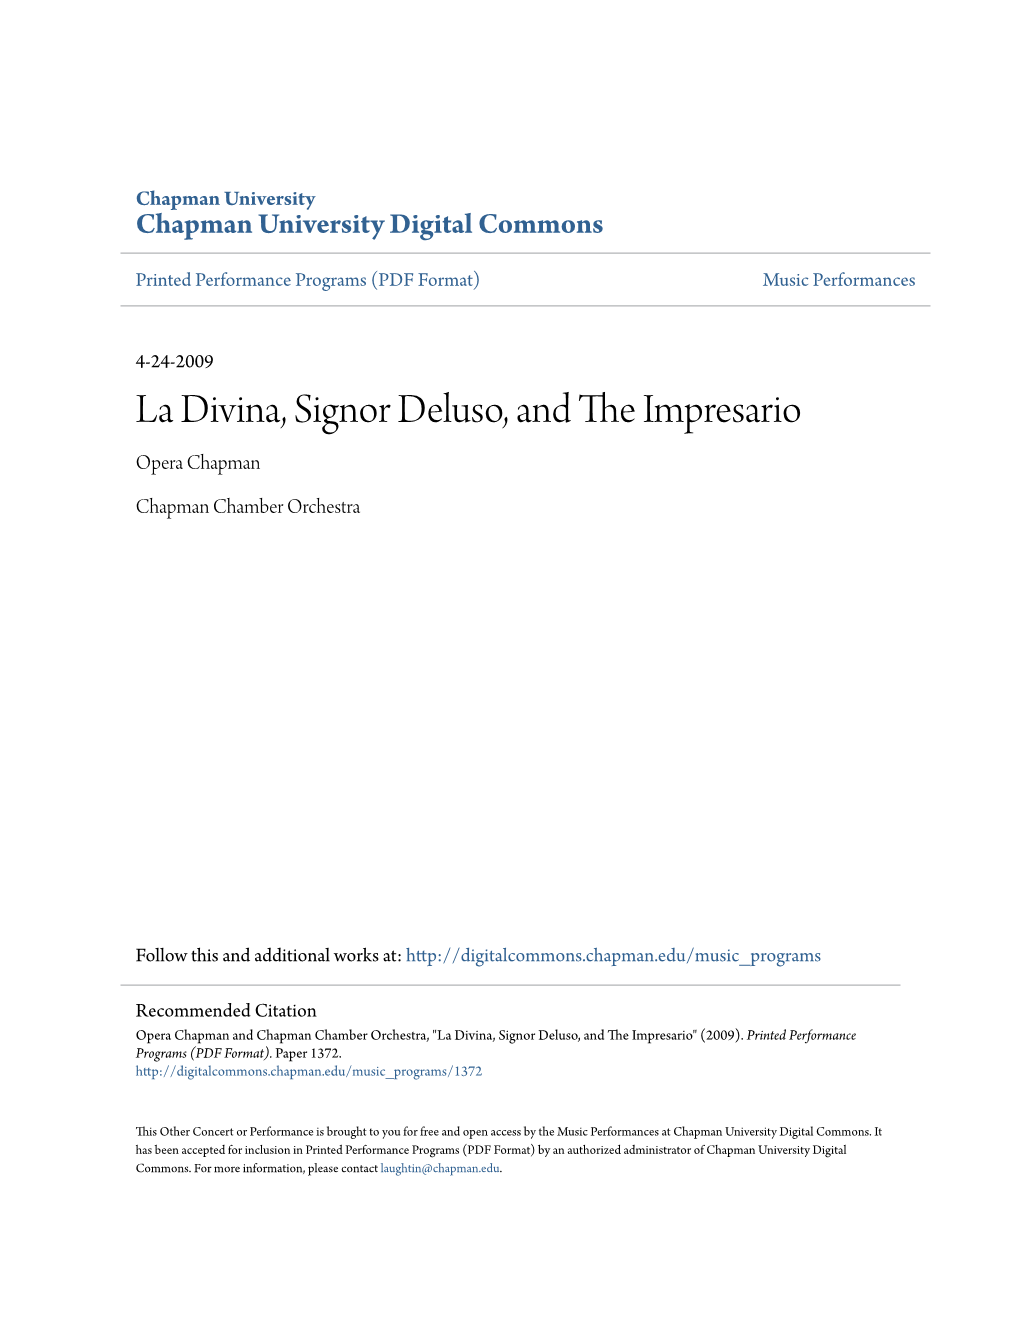 La Divina, Signor Deluso, and the Impresario